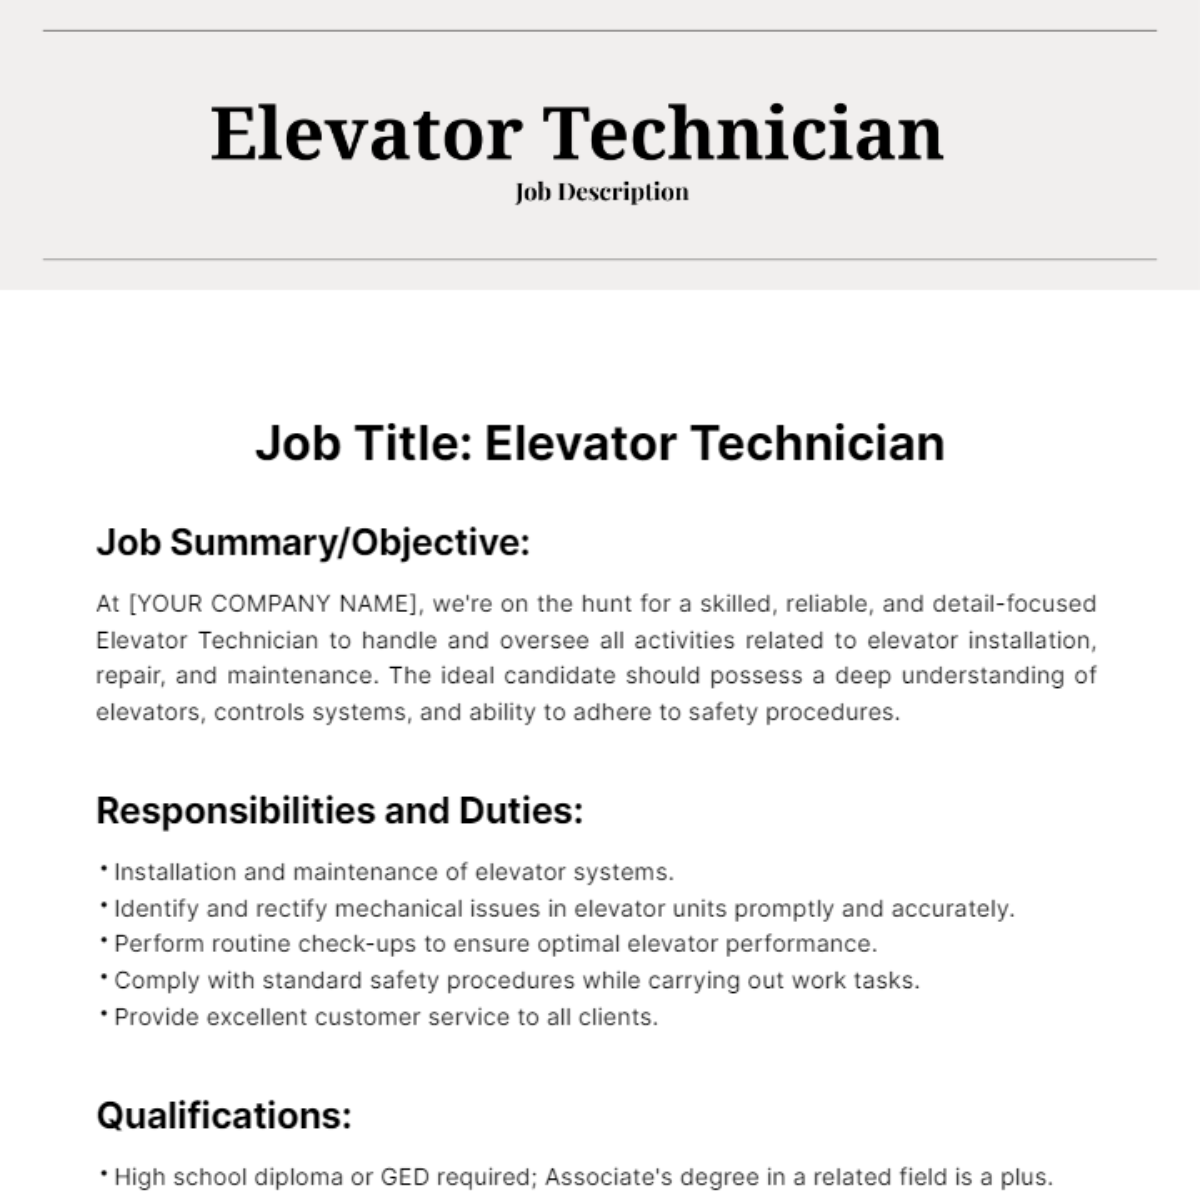 Free Elevator Technician Job Description Template